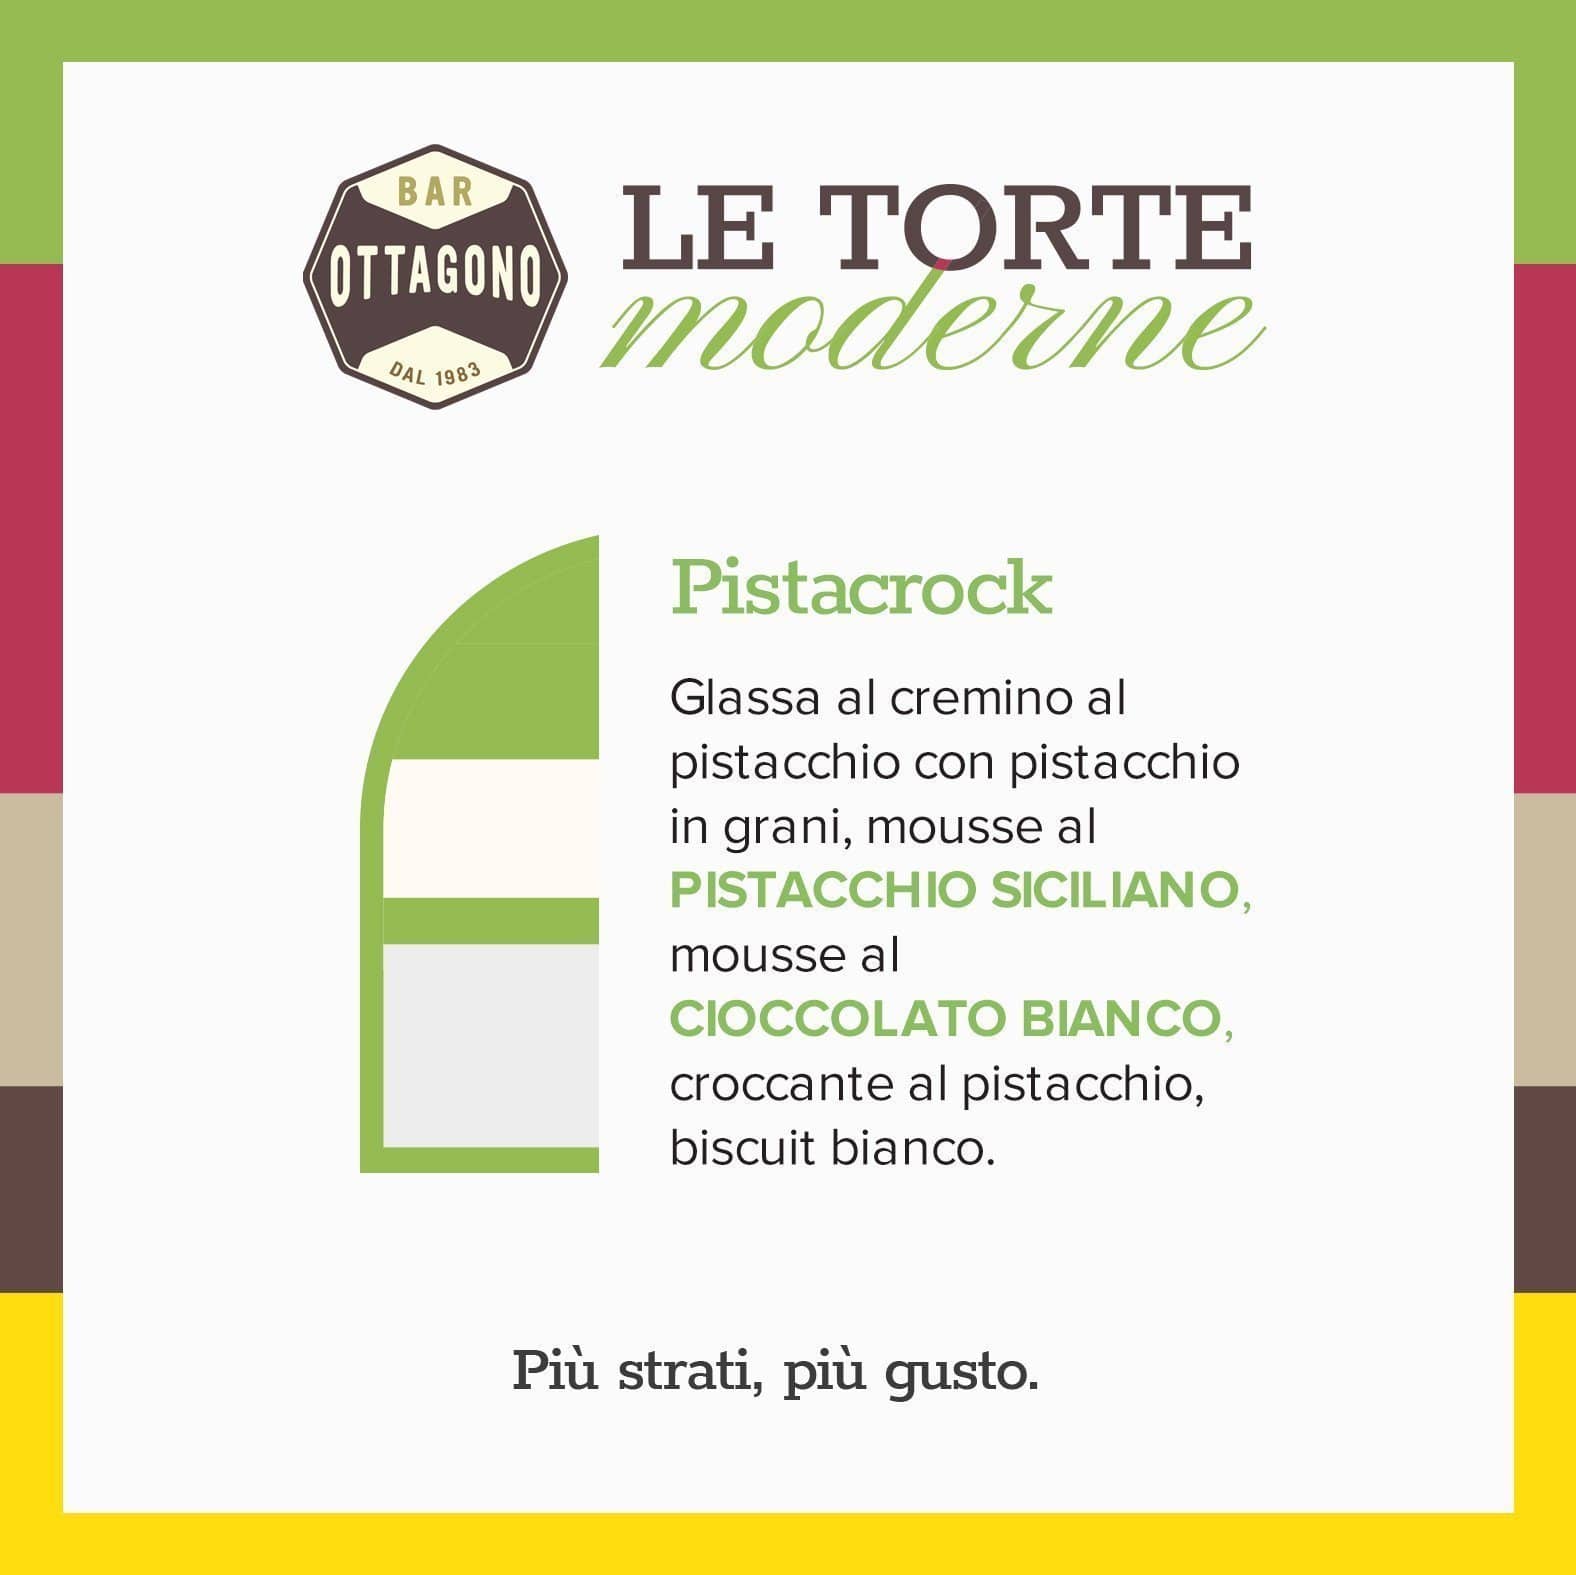 PISTACROCK - Pistacchio siciliano & Cioccolato bianco (Spedizione ❄️ in 🇮🇹) - Ottagono - Pasticceria dal 1983 - Torte in Pasticceria Moderna - sicilia - catania - online